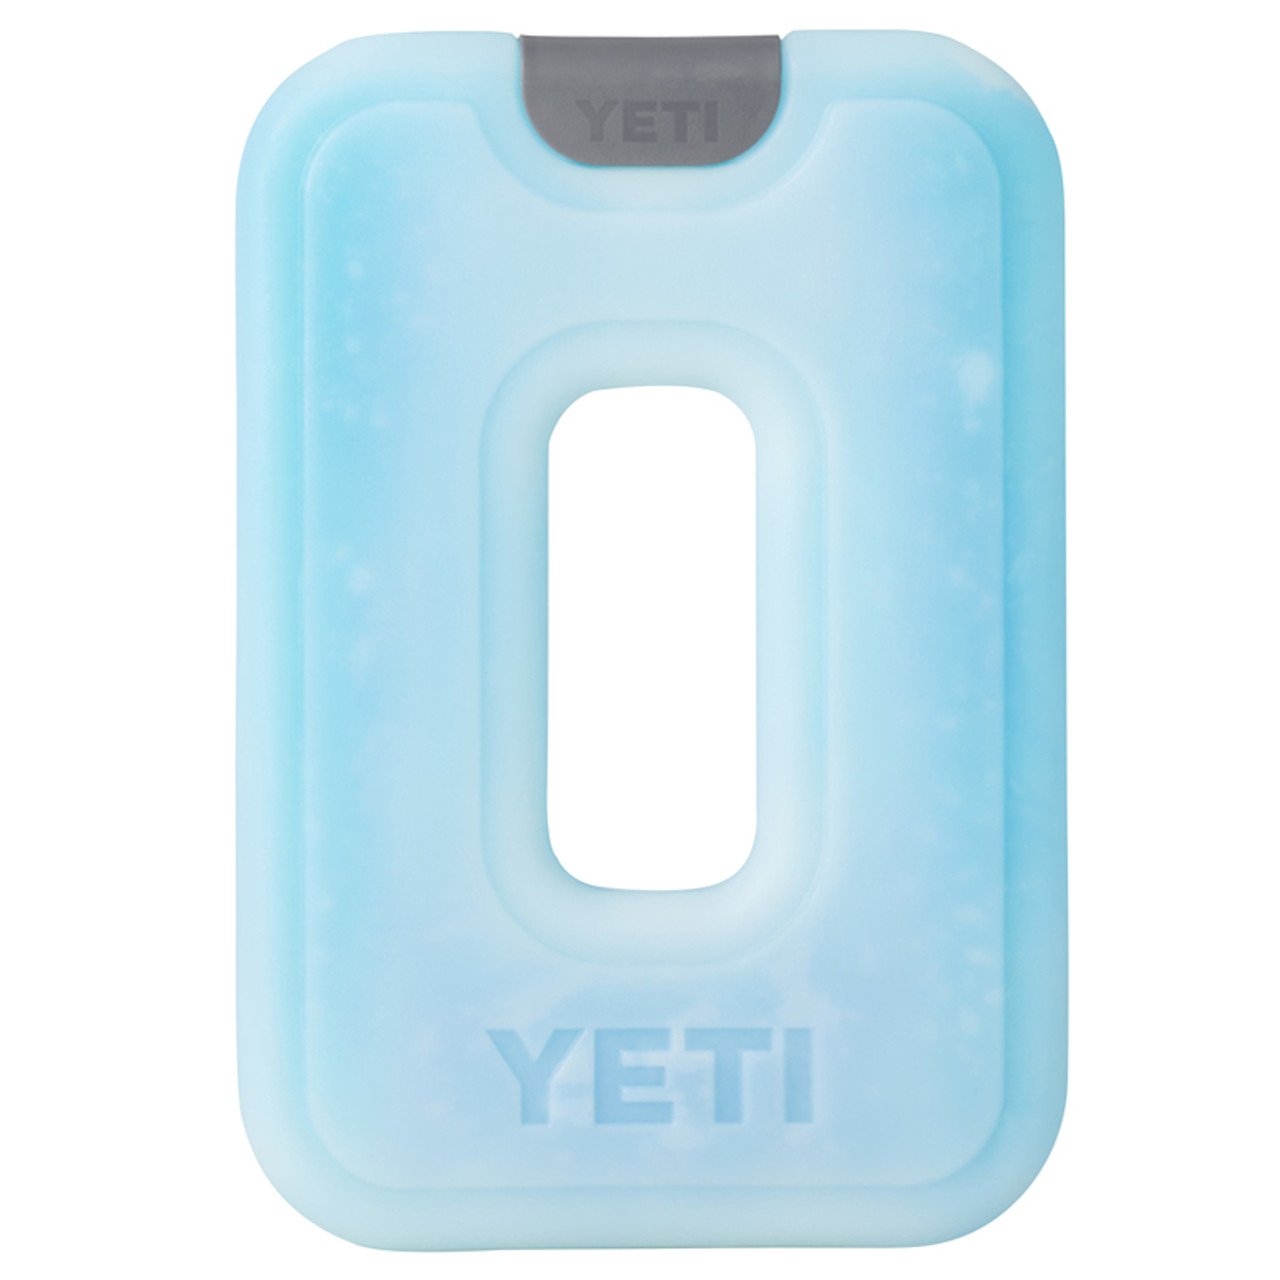 YETI Thin Ice Pack - MEDIUM . 450g . 1lb Block